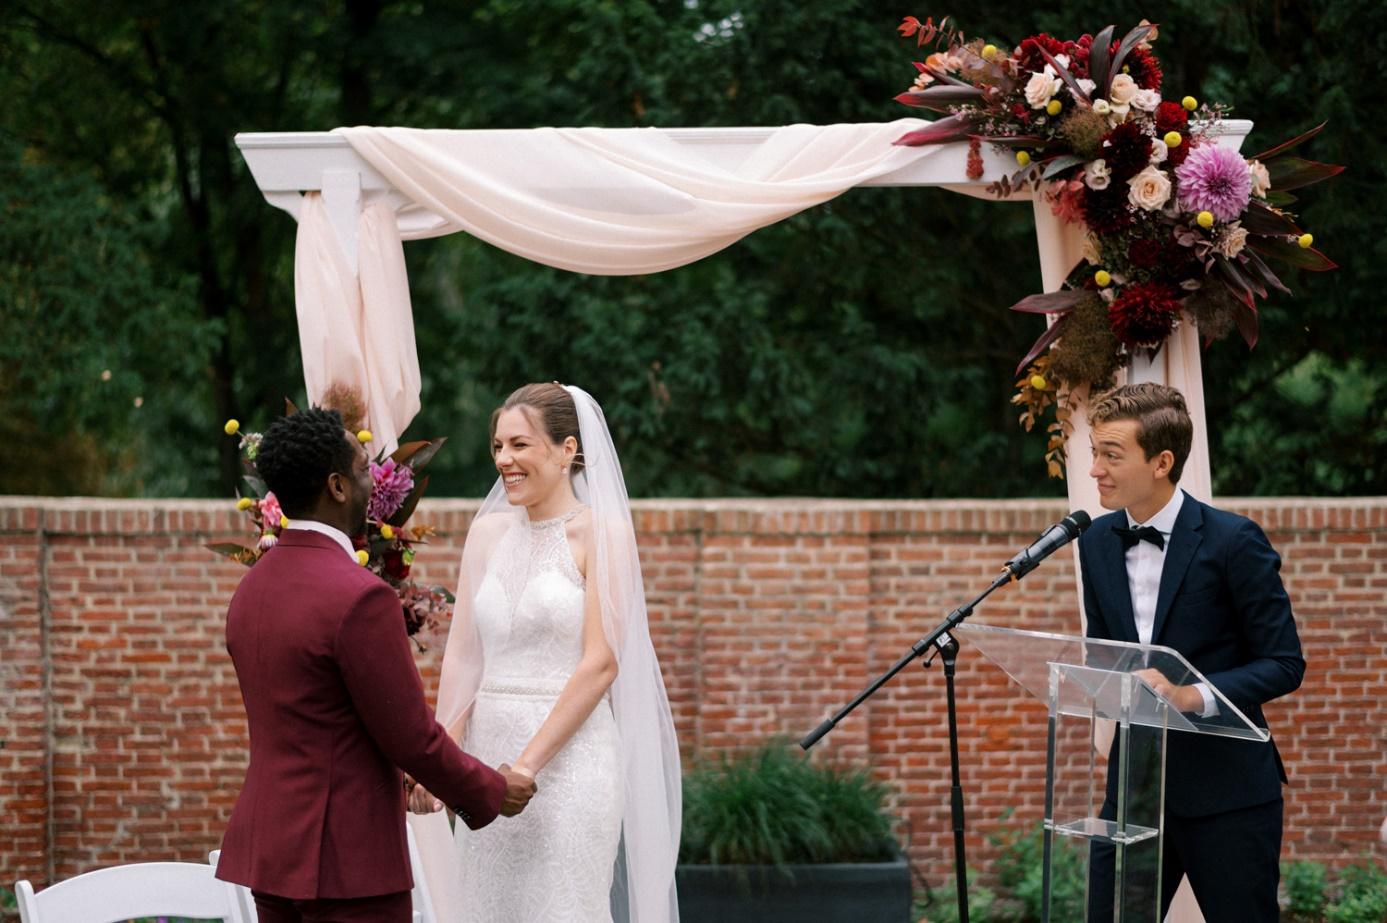 Afbeelding met bruid, persoon, trouwjurk, kleding

Automatisch gegenereerde beschrijving